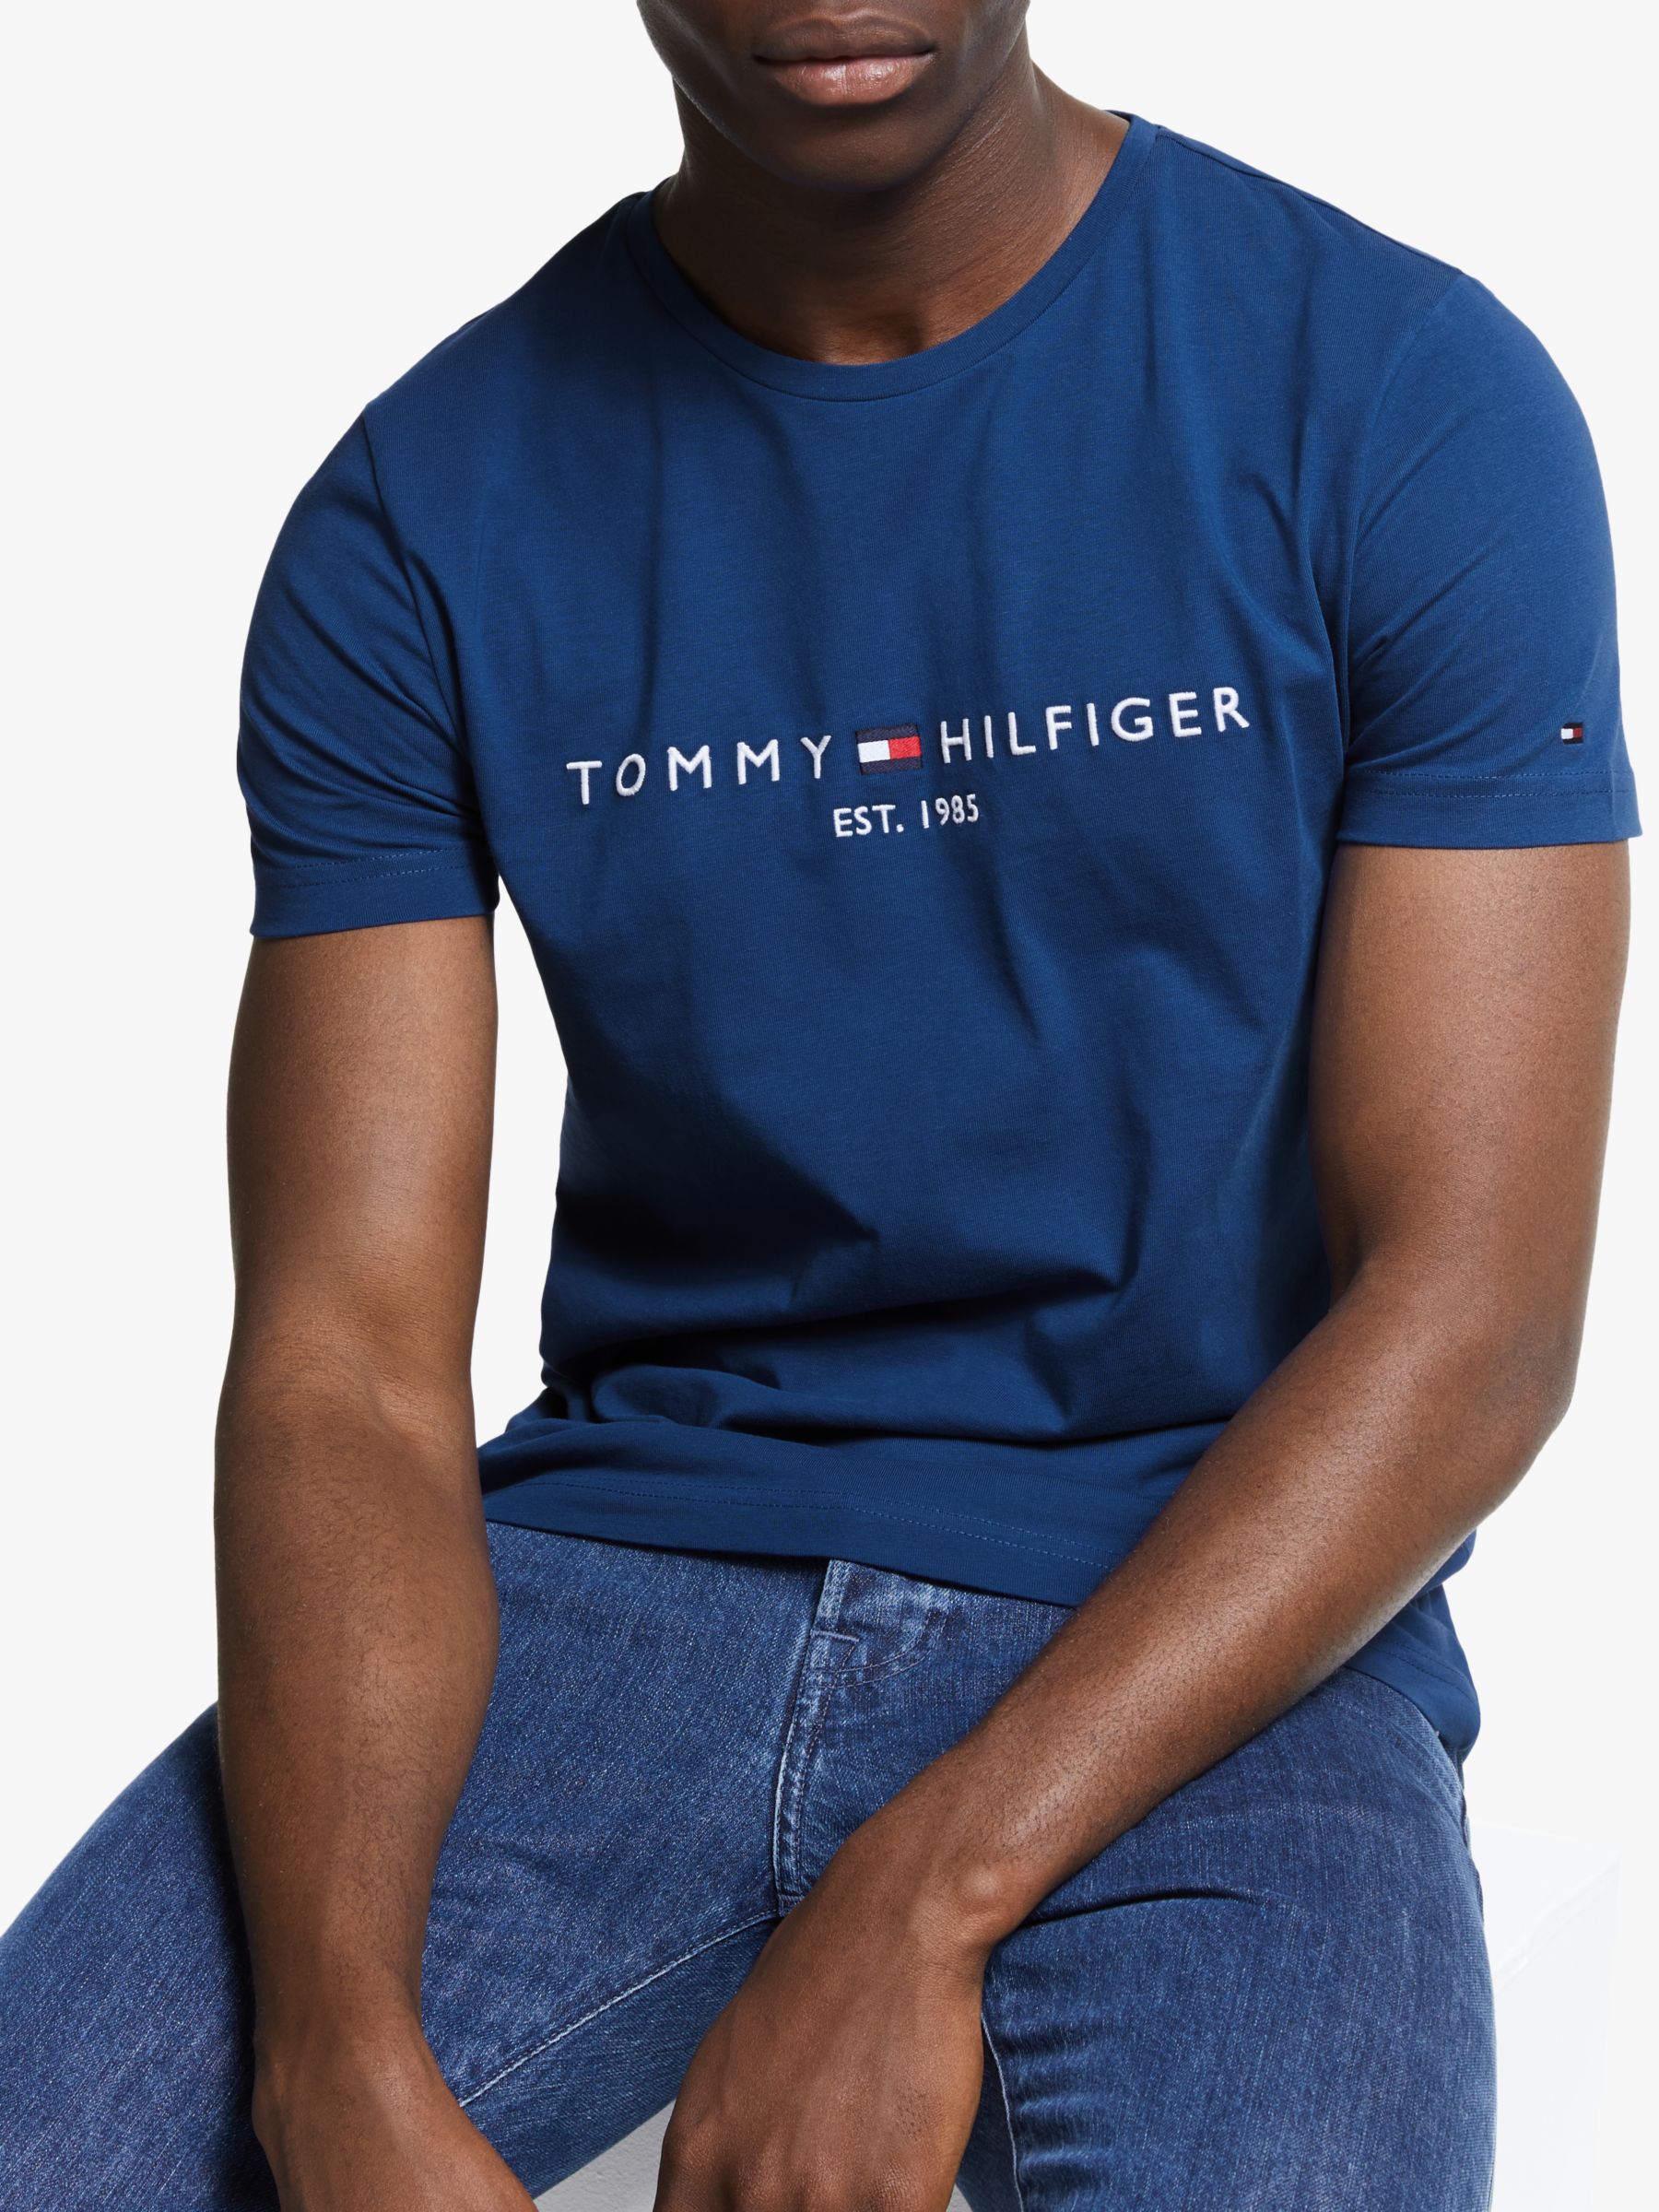 Tommy Hilfiger Logo T-Shirt at John 